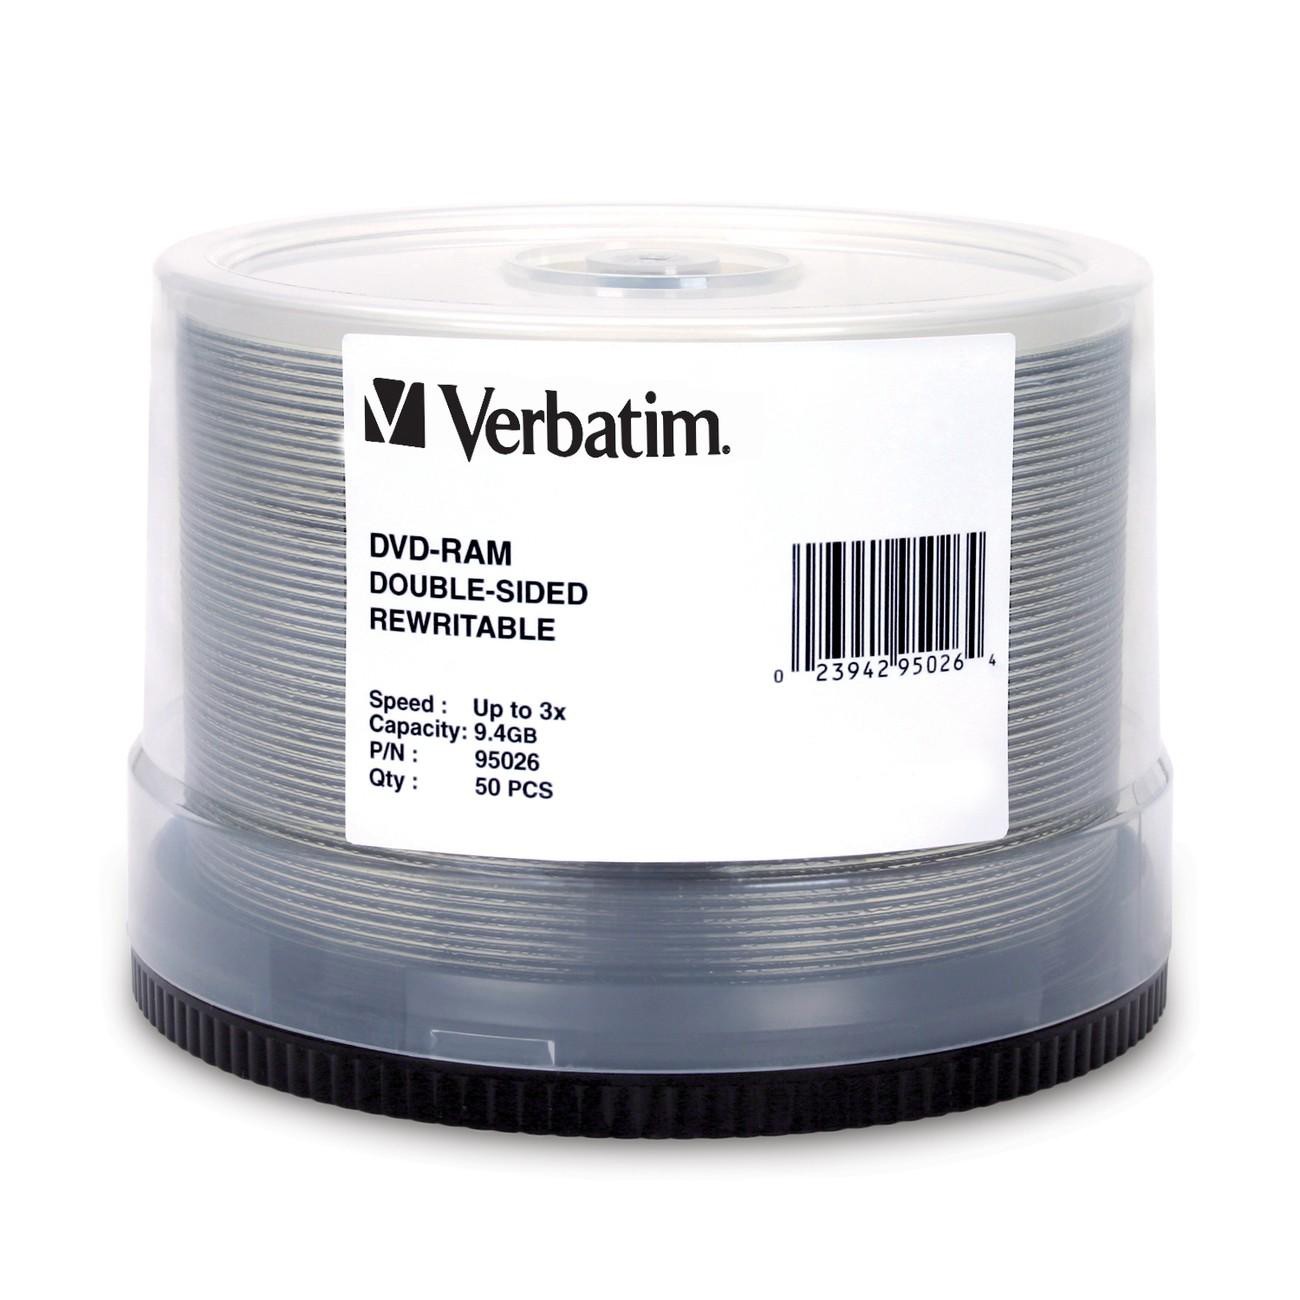 Best Buy Verbatim Dvd Rewritable Media Dvd Ram 3x 9 40 Gb 50 Pack Spindle